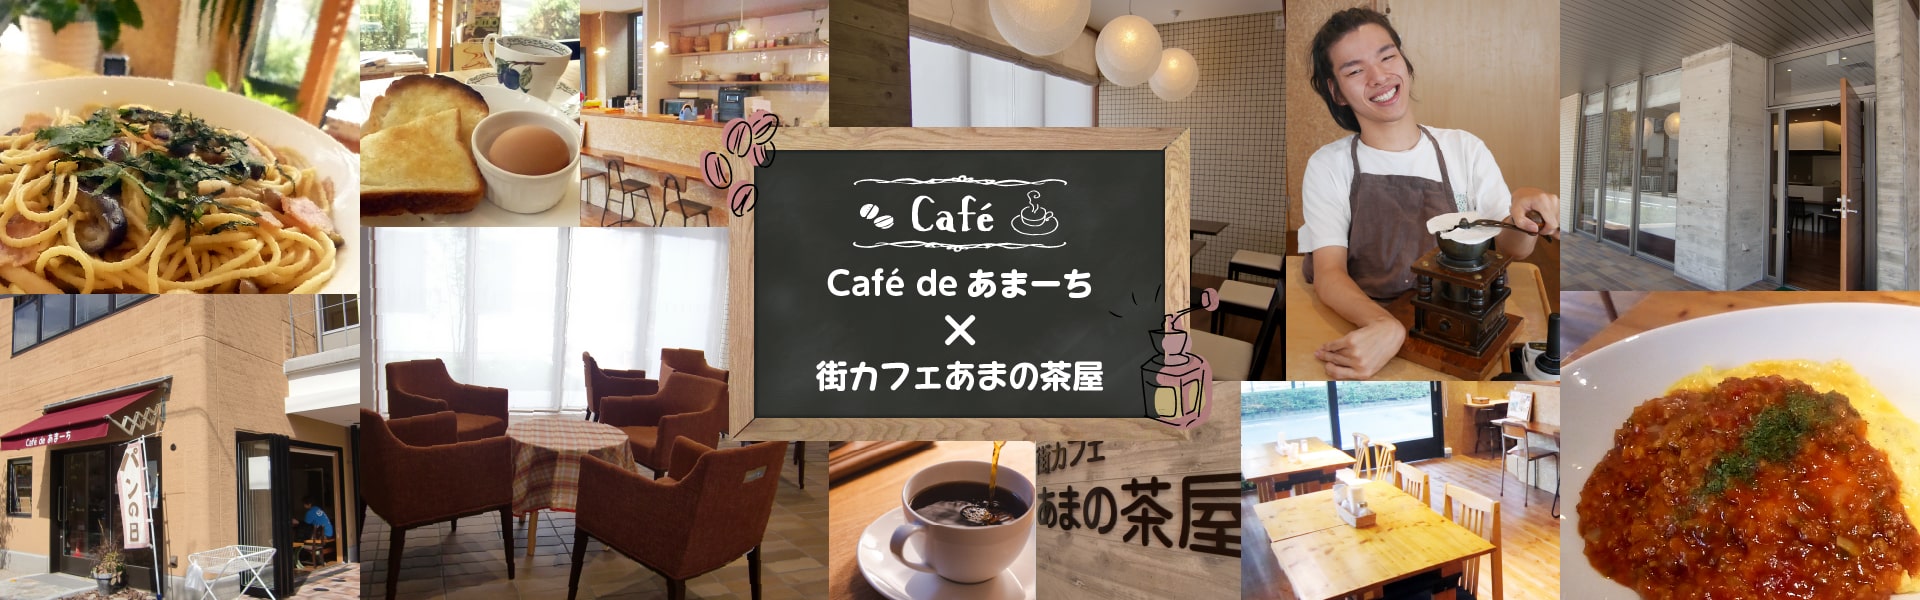 Café de あまーち×街カフェあまの茶屋